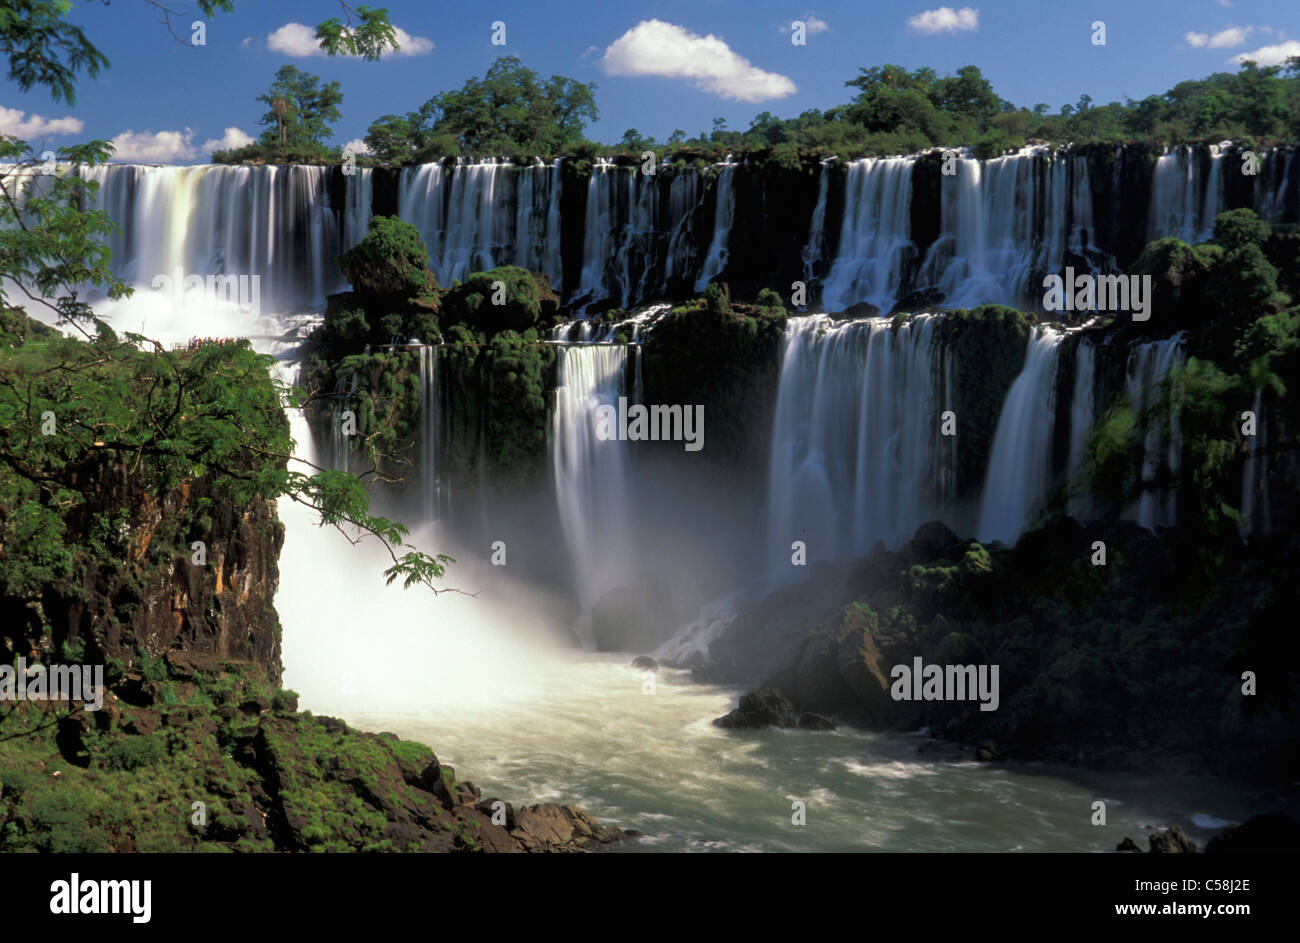 Parque National do Iguazu, Cataratas do Iguazu, Iguazu Waterfalls, Foz do Iguazu, Parana, Brazil, South America, waterfall, tree Stock Photo